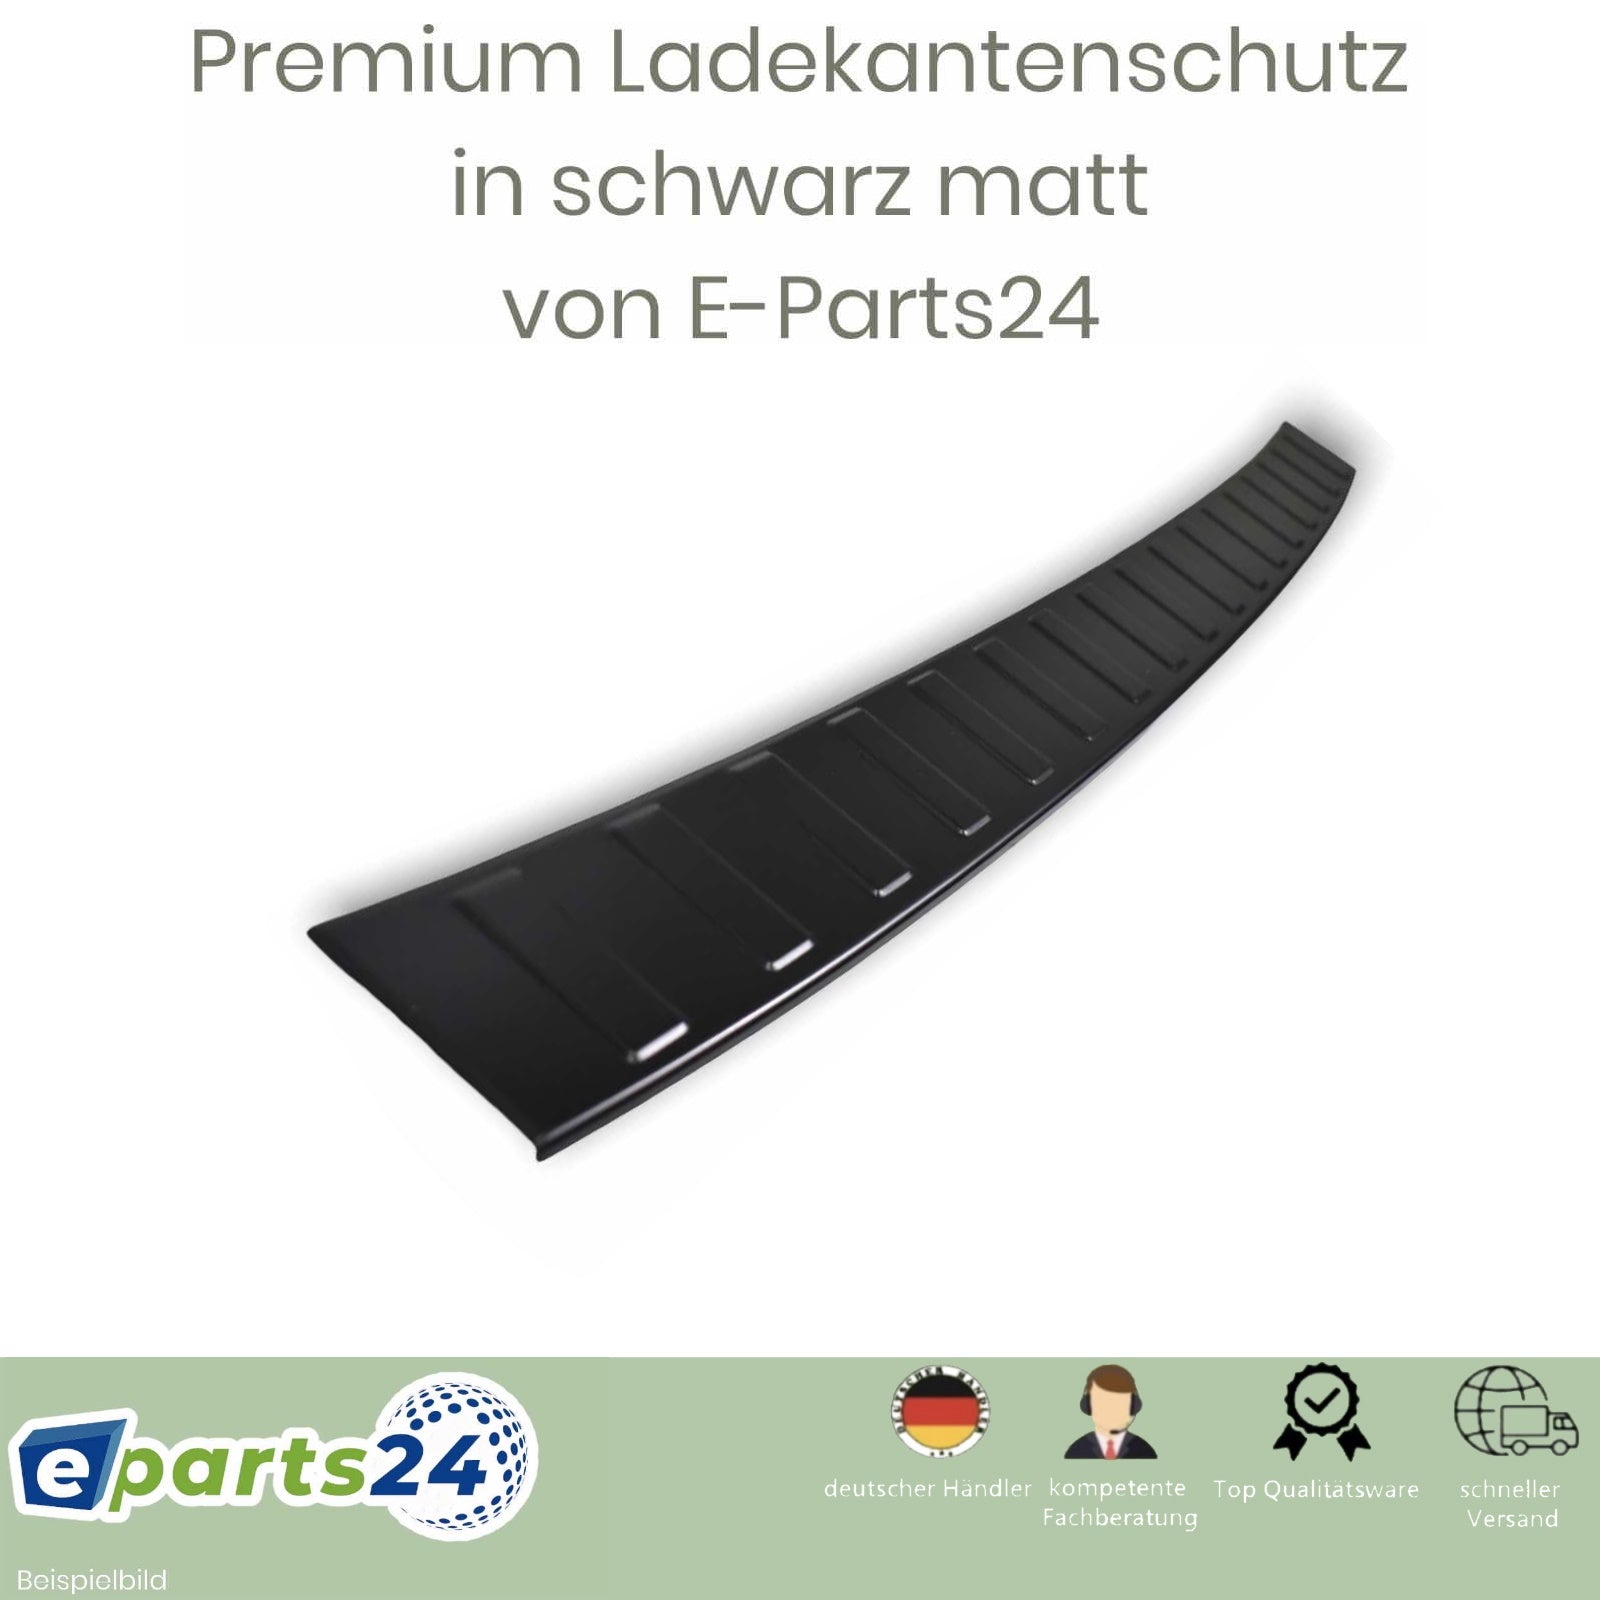 Ladekantenschutz Heckschutz für KIA Sportage E-Parts24 2021 sch – NQ5 ab Edelstahl